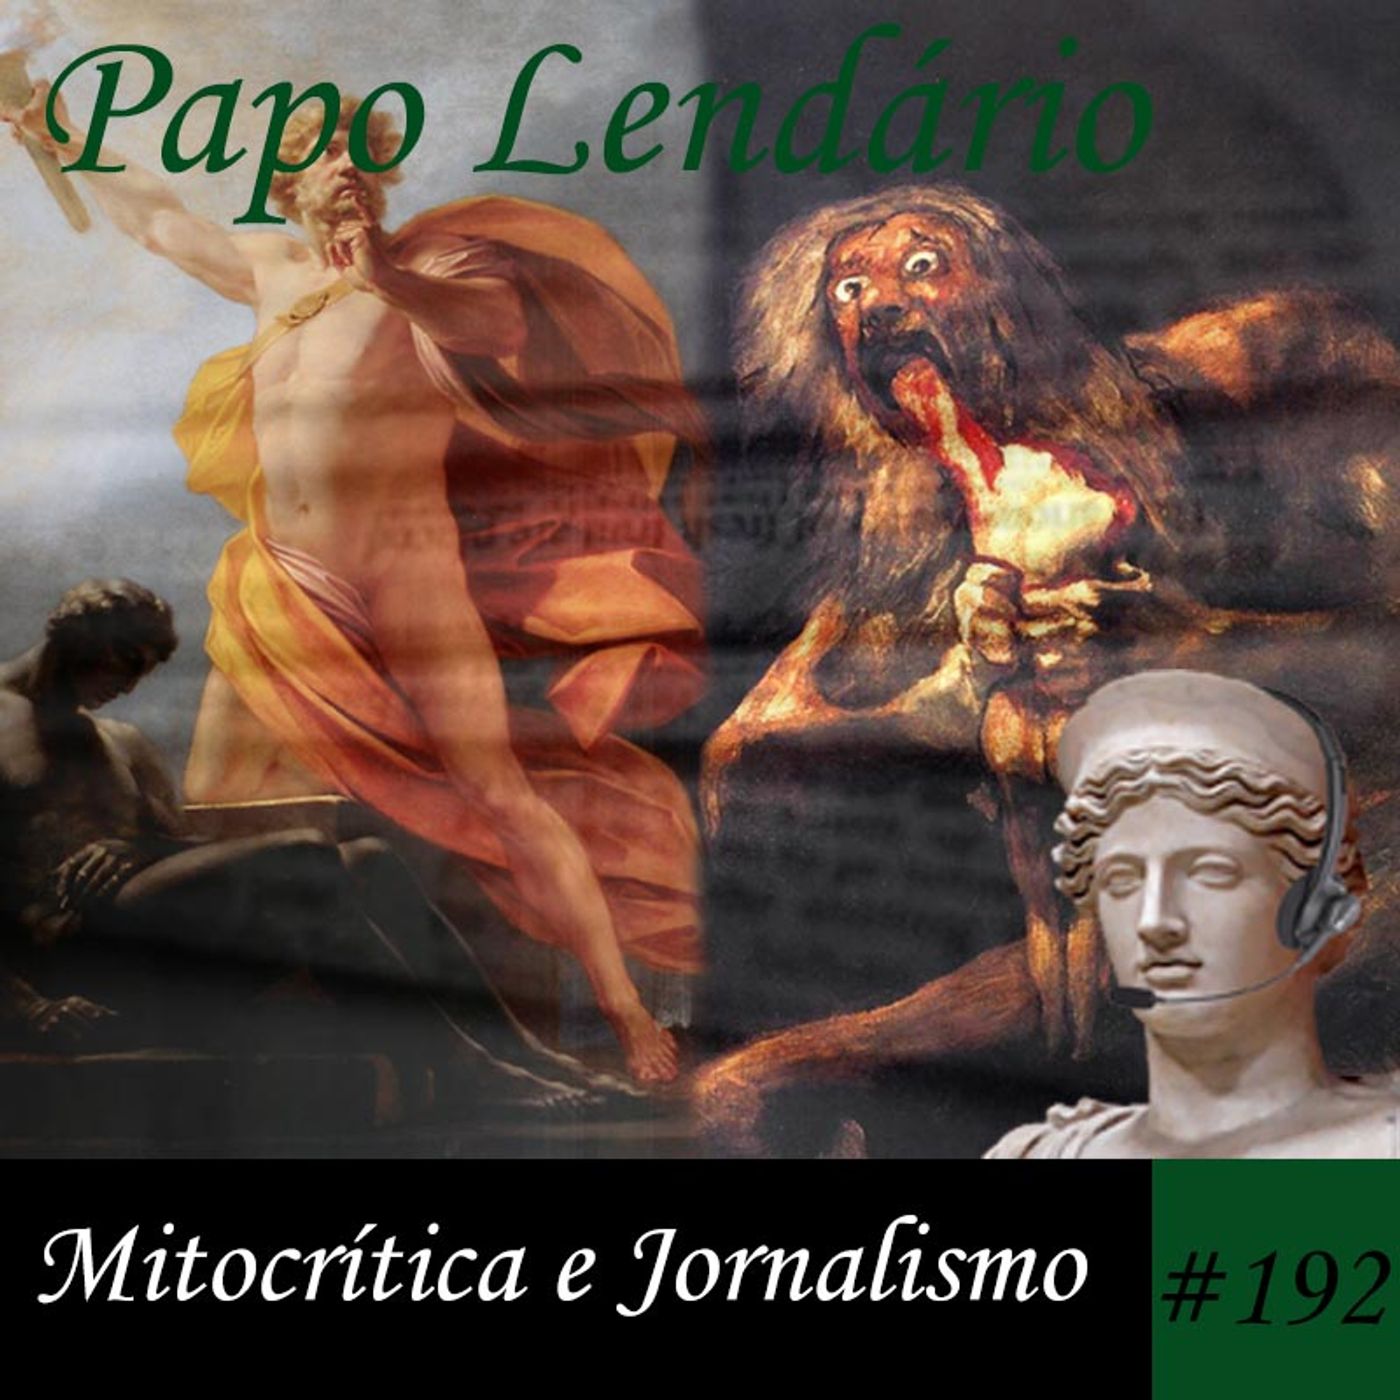 Papo Lendário #192 – Mitocrítica e Jornalismo